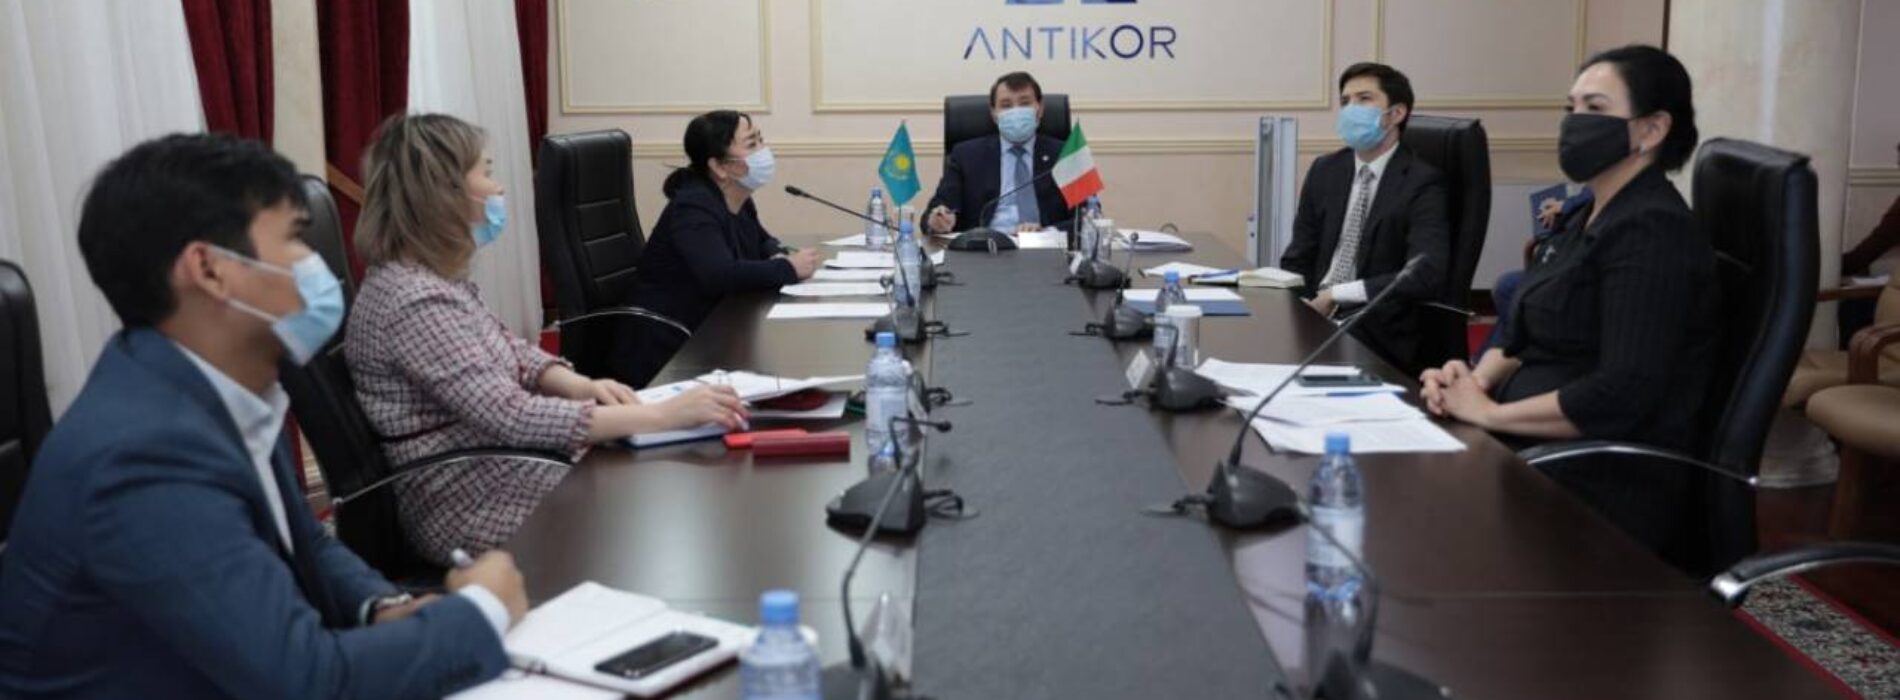 Антикоррупционные ведомства Казахстана и Италии обменялись идеями по своей деятельности